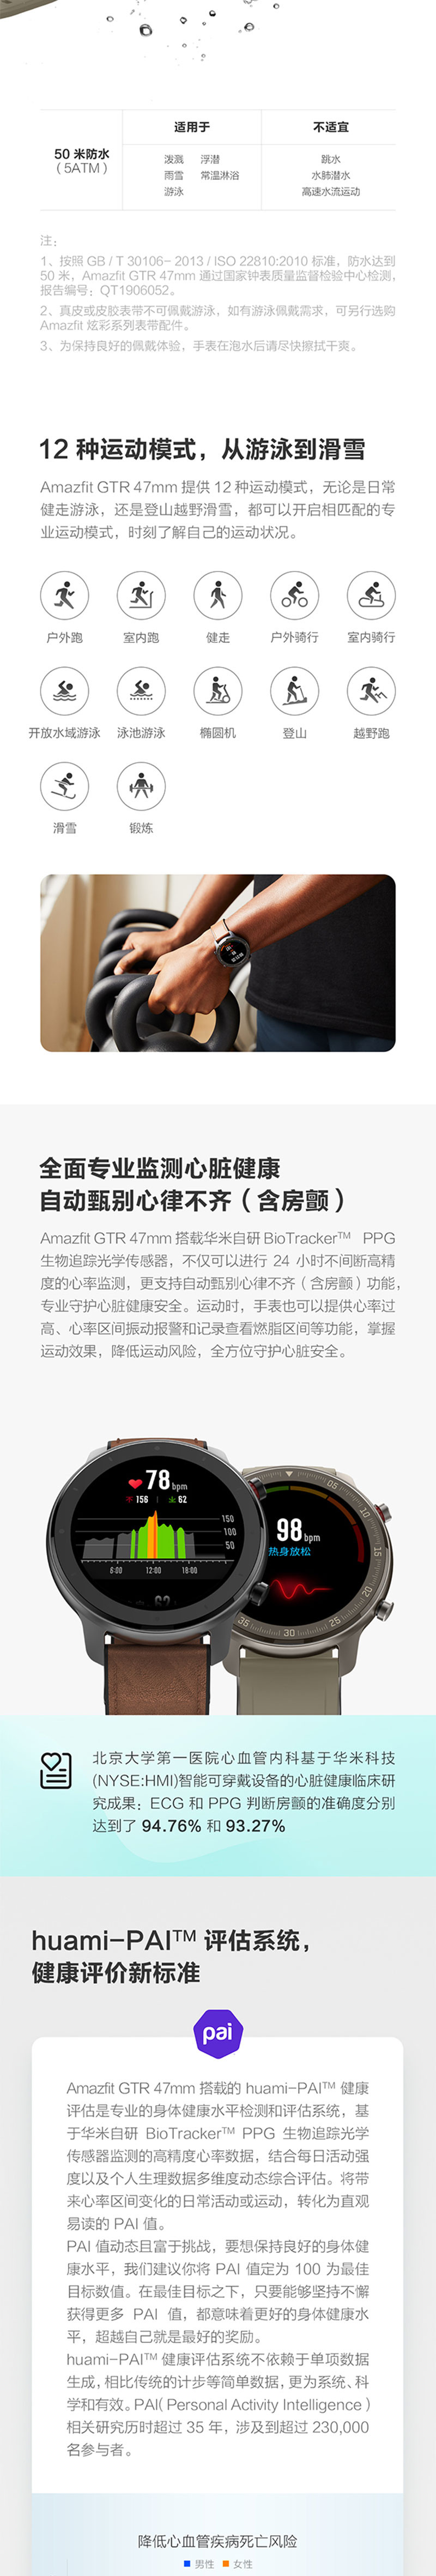 华米Amazfit GTR智能手表智能运动手表24天续航NFC50米防水